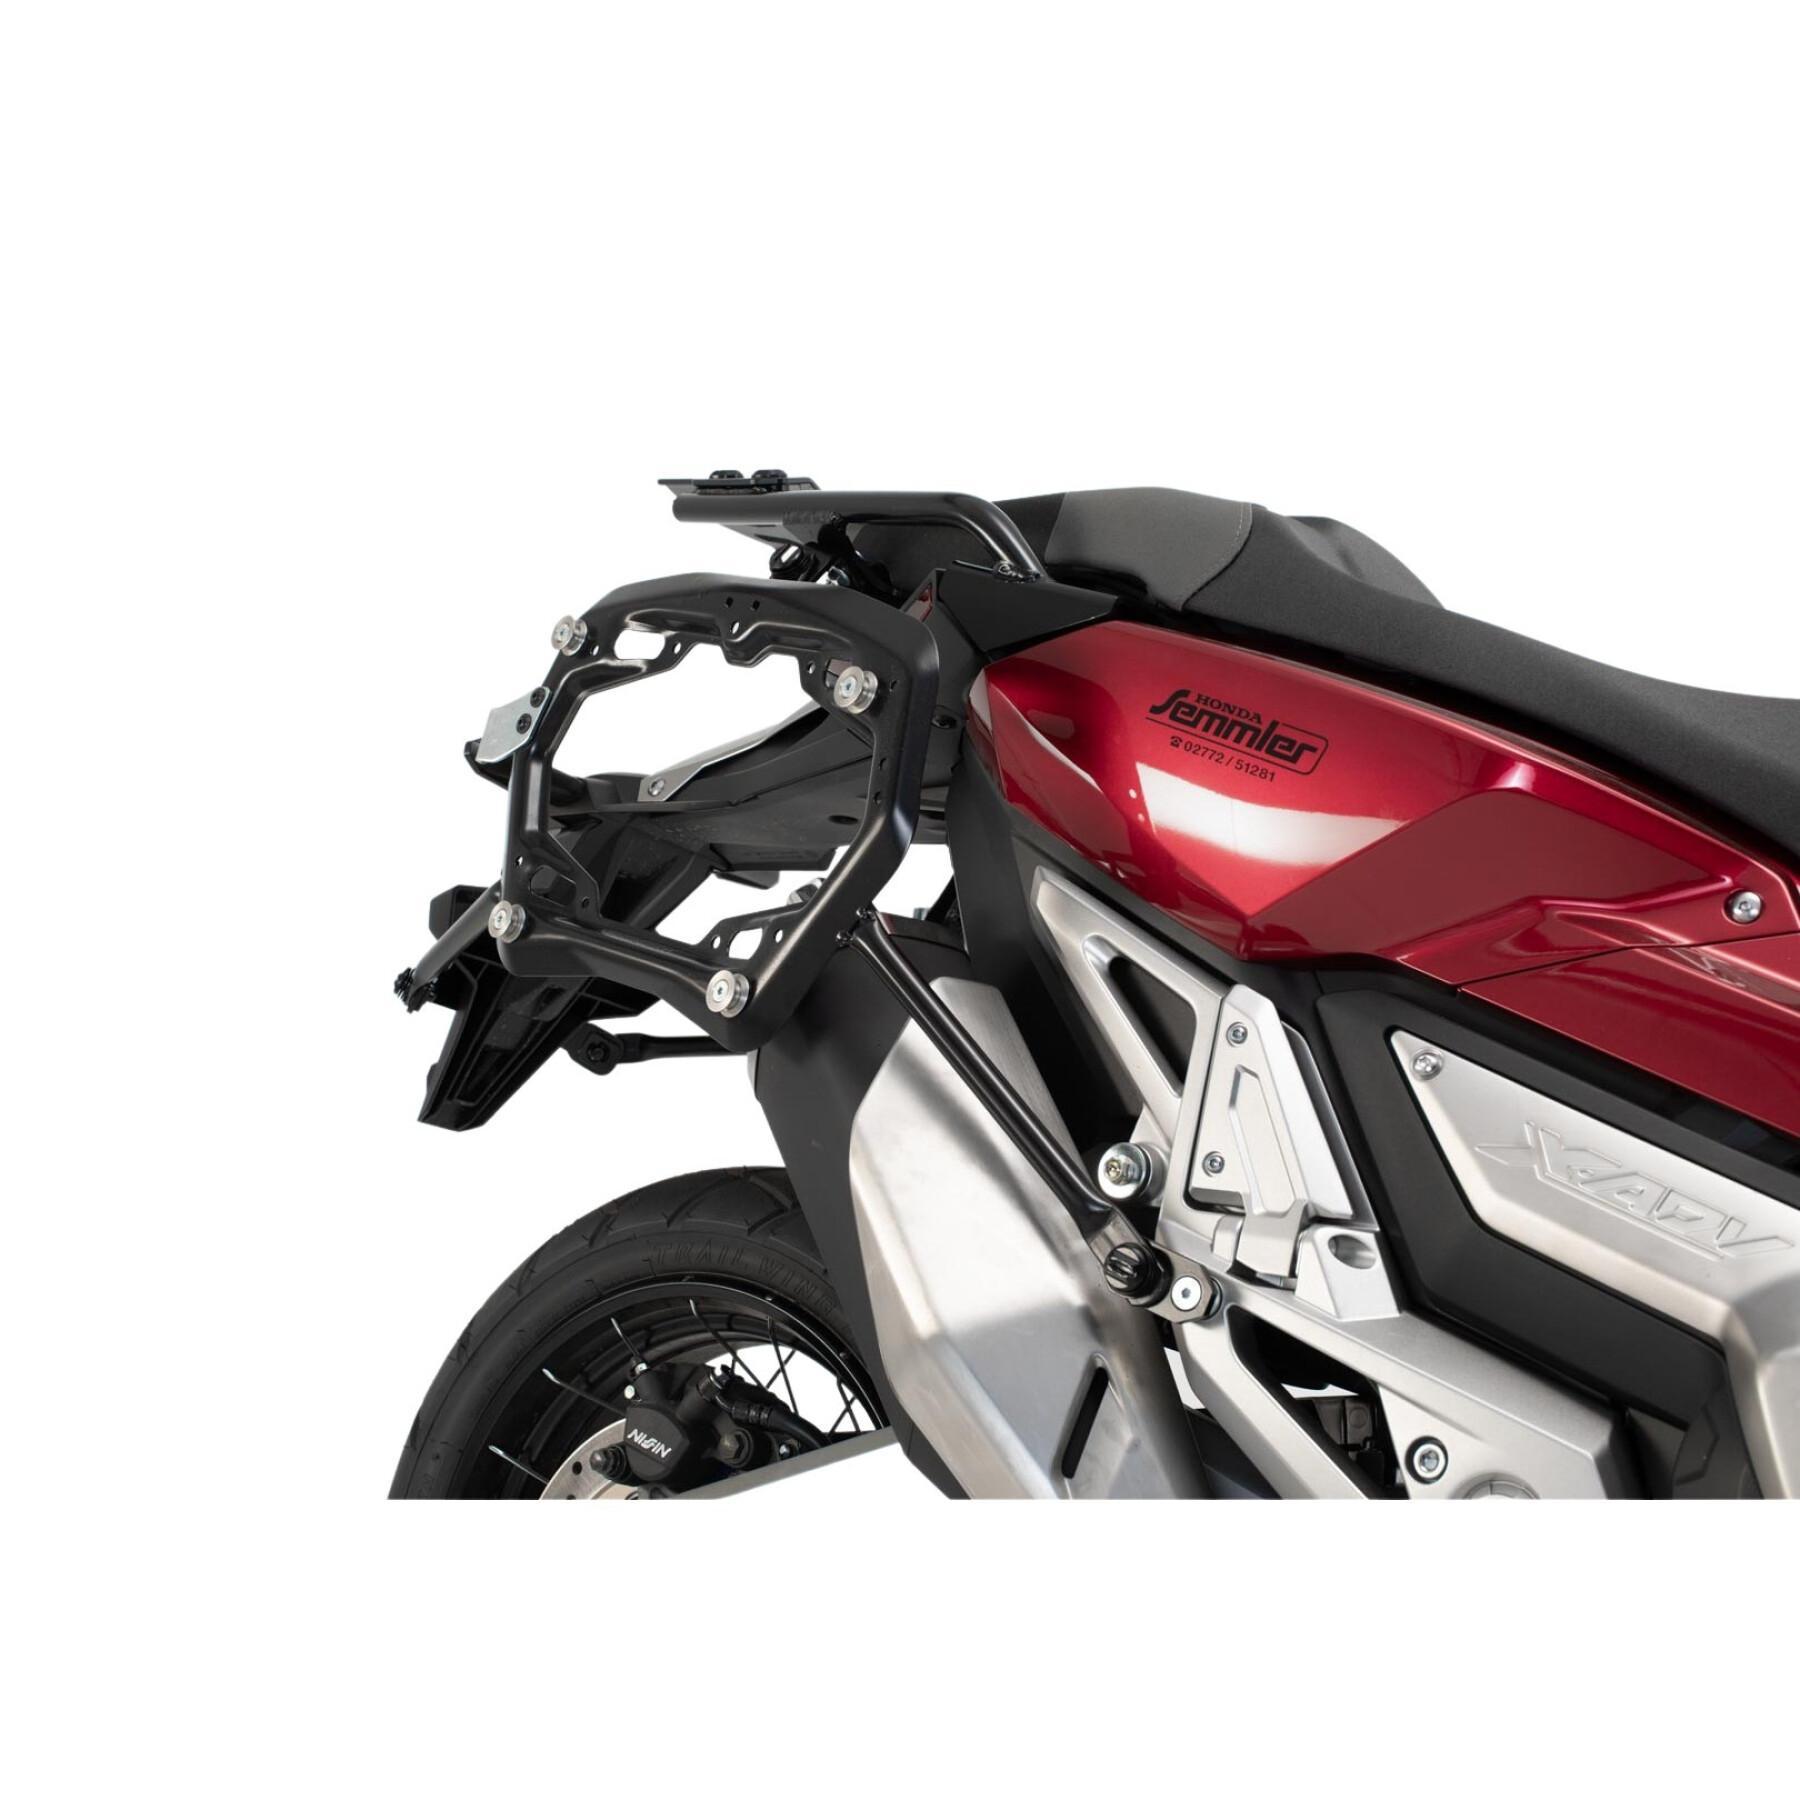 Soporte de la maleta lateral de la moto Sw-Motech Pro. Honda X-Adv (16-)